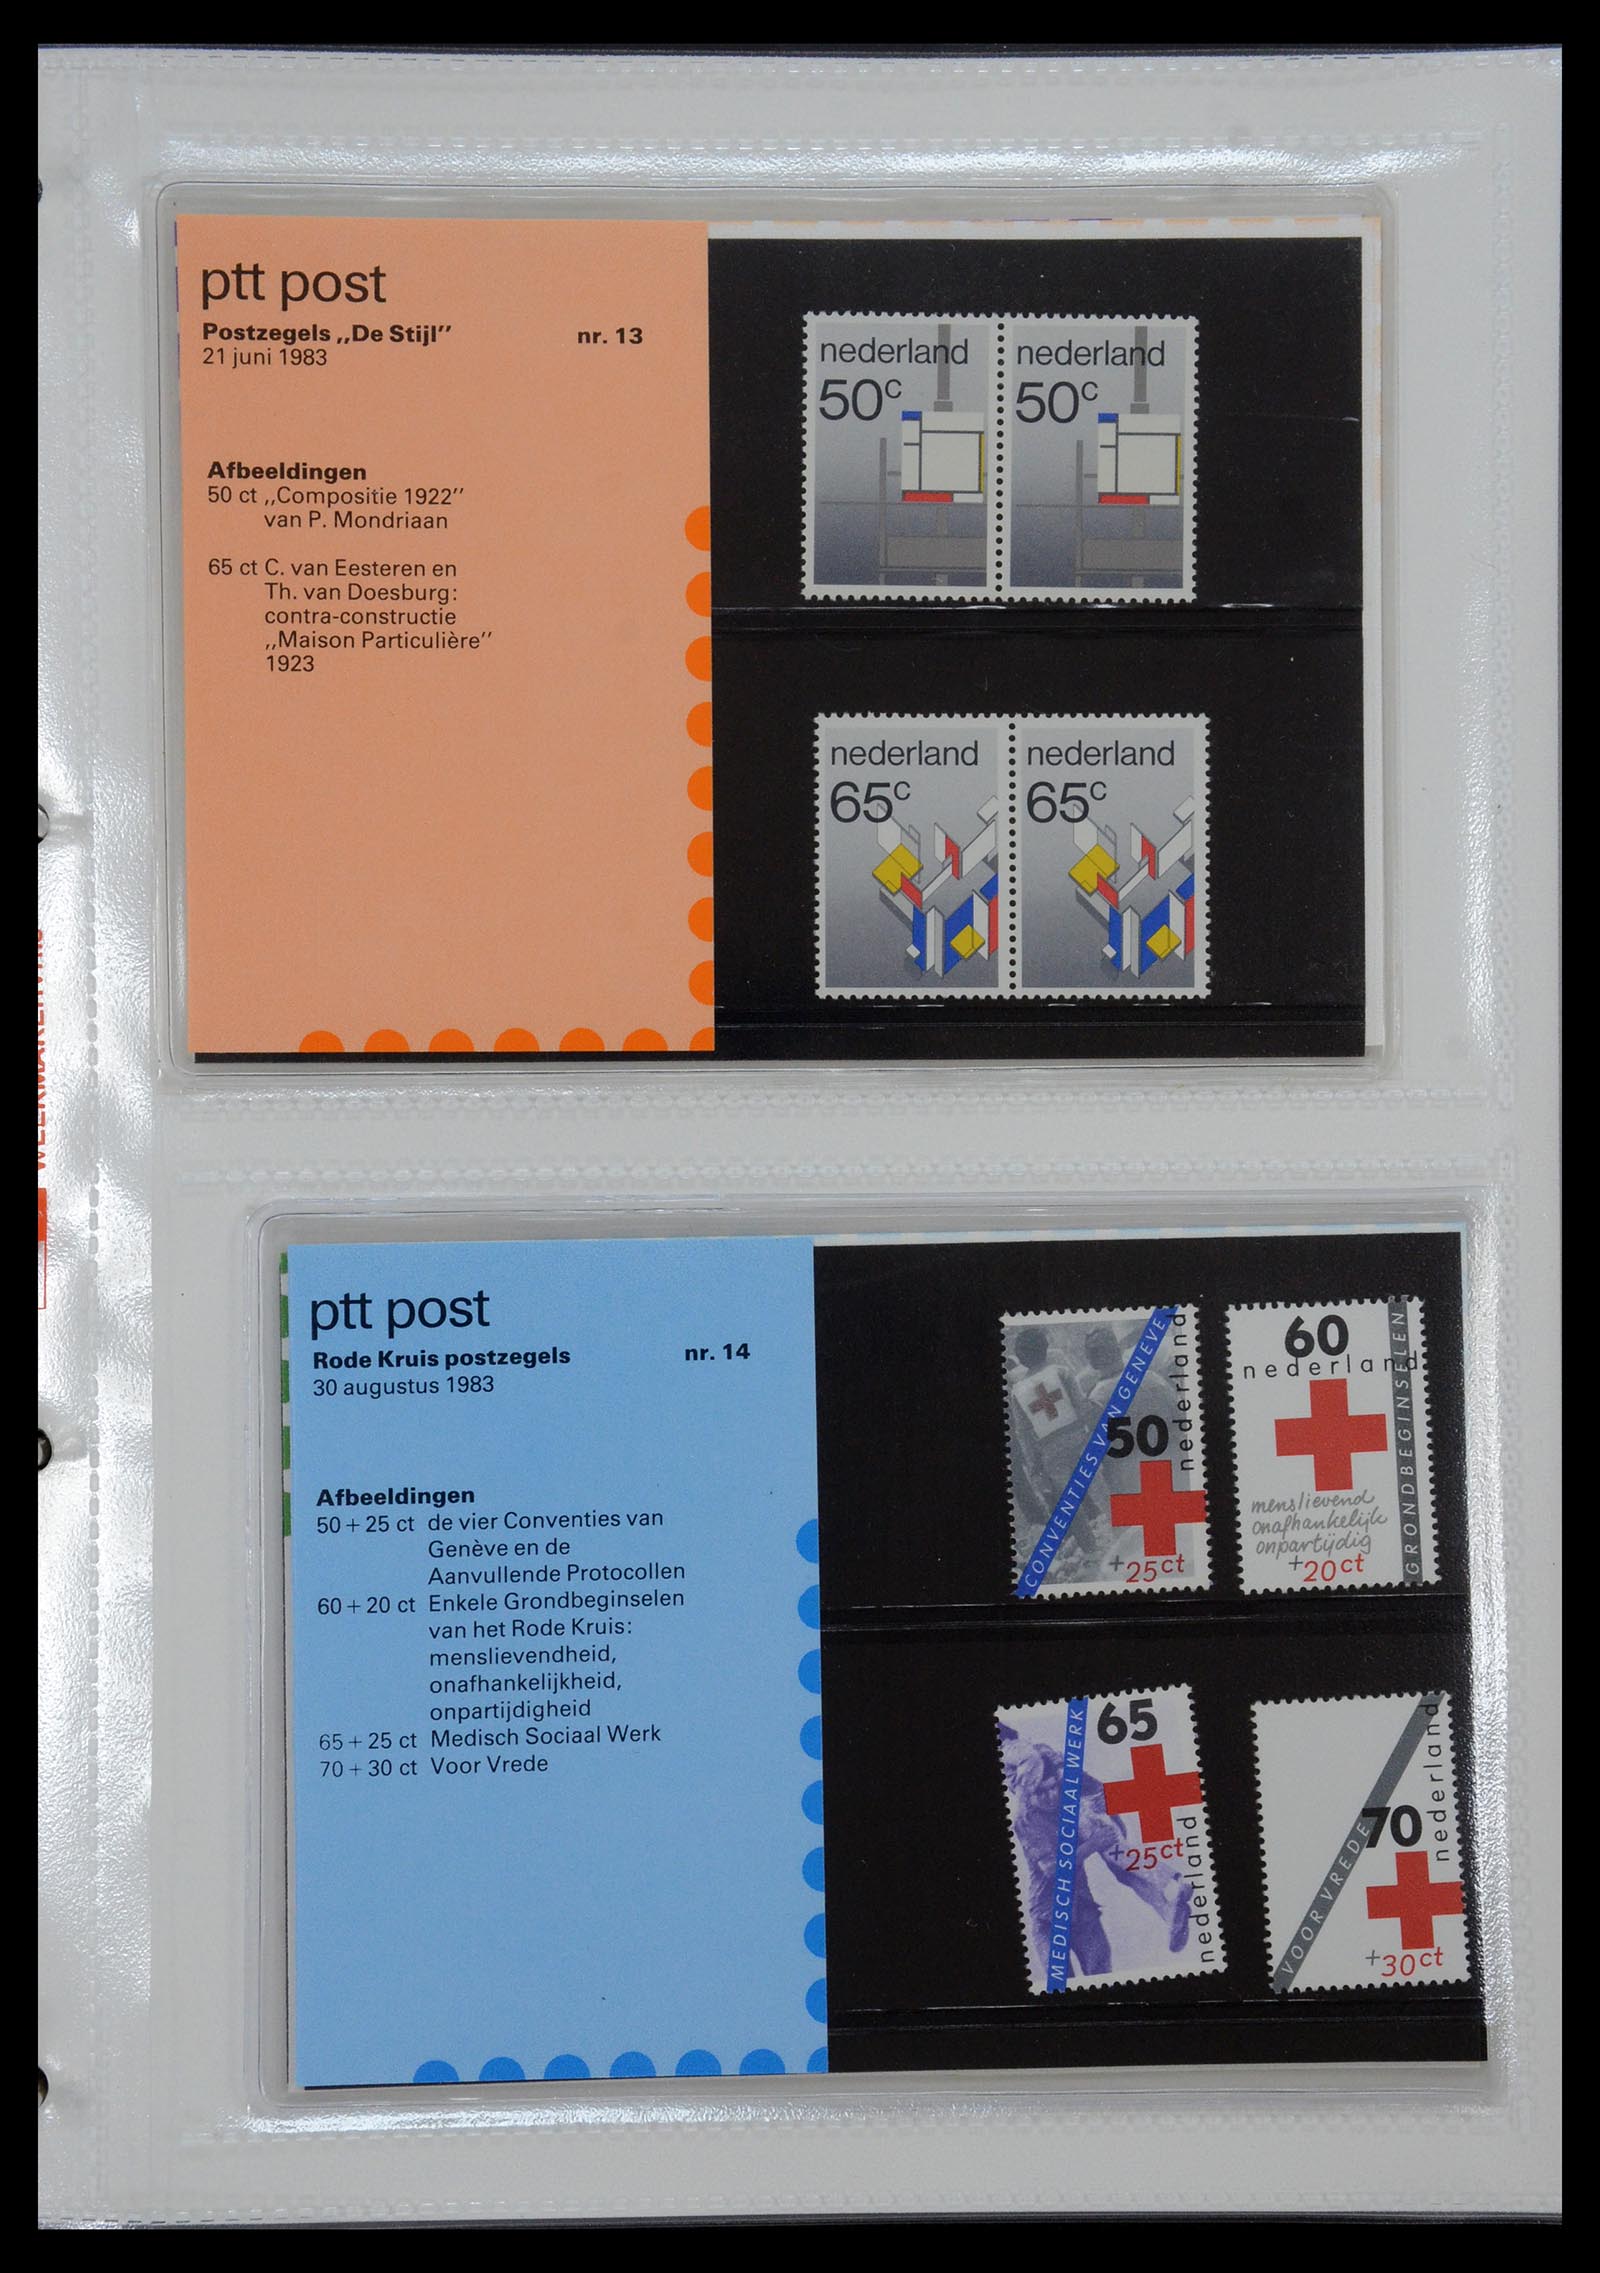 35144 007 - Stamp Collection 35144 Netherlands PTT presentation packs 1982-2021!